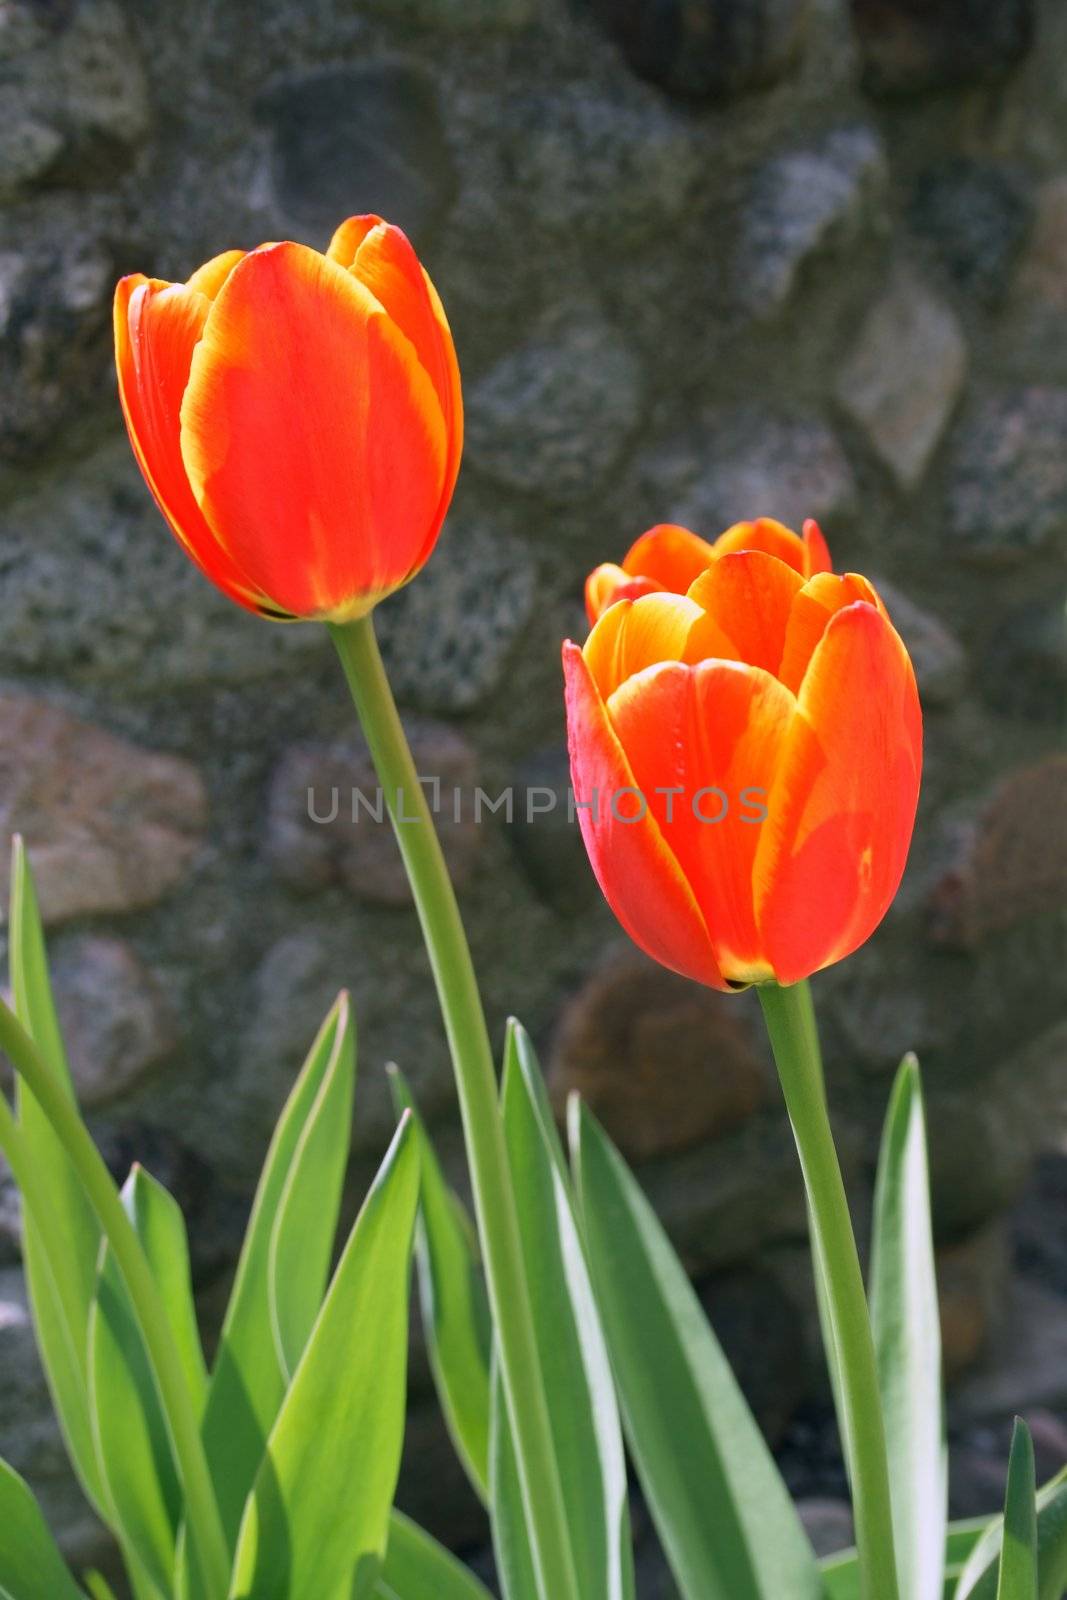 Shiny red tulips by anikasalsera